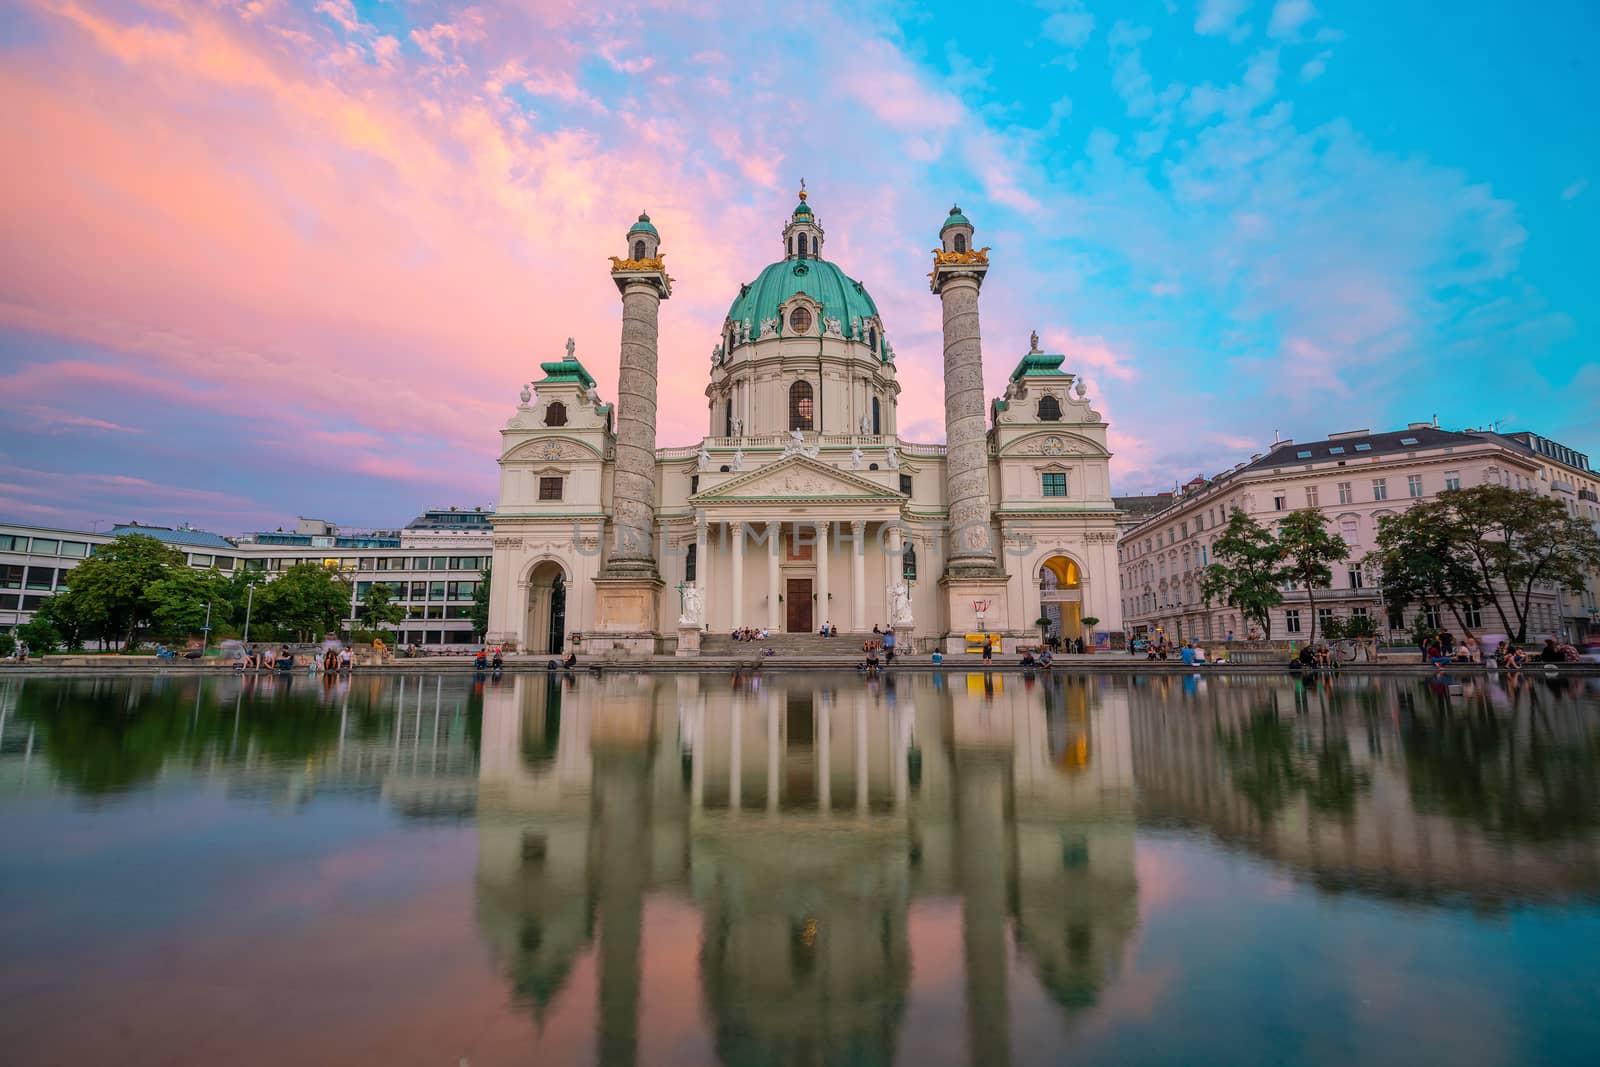 St. Charles's Church (Karlskirche) in Vienna, Austria at twilight